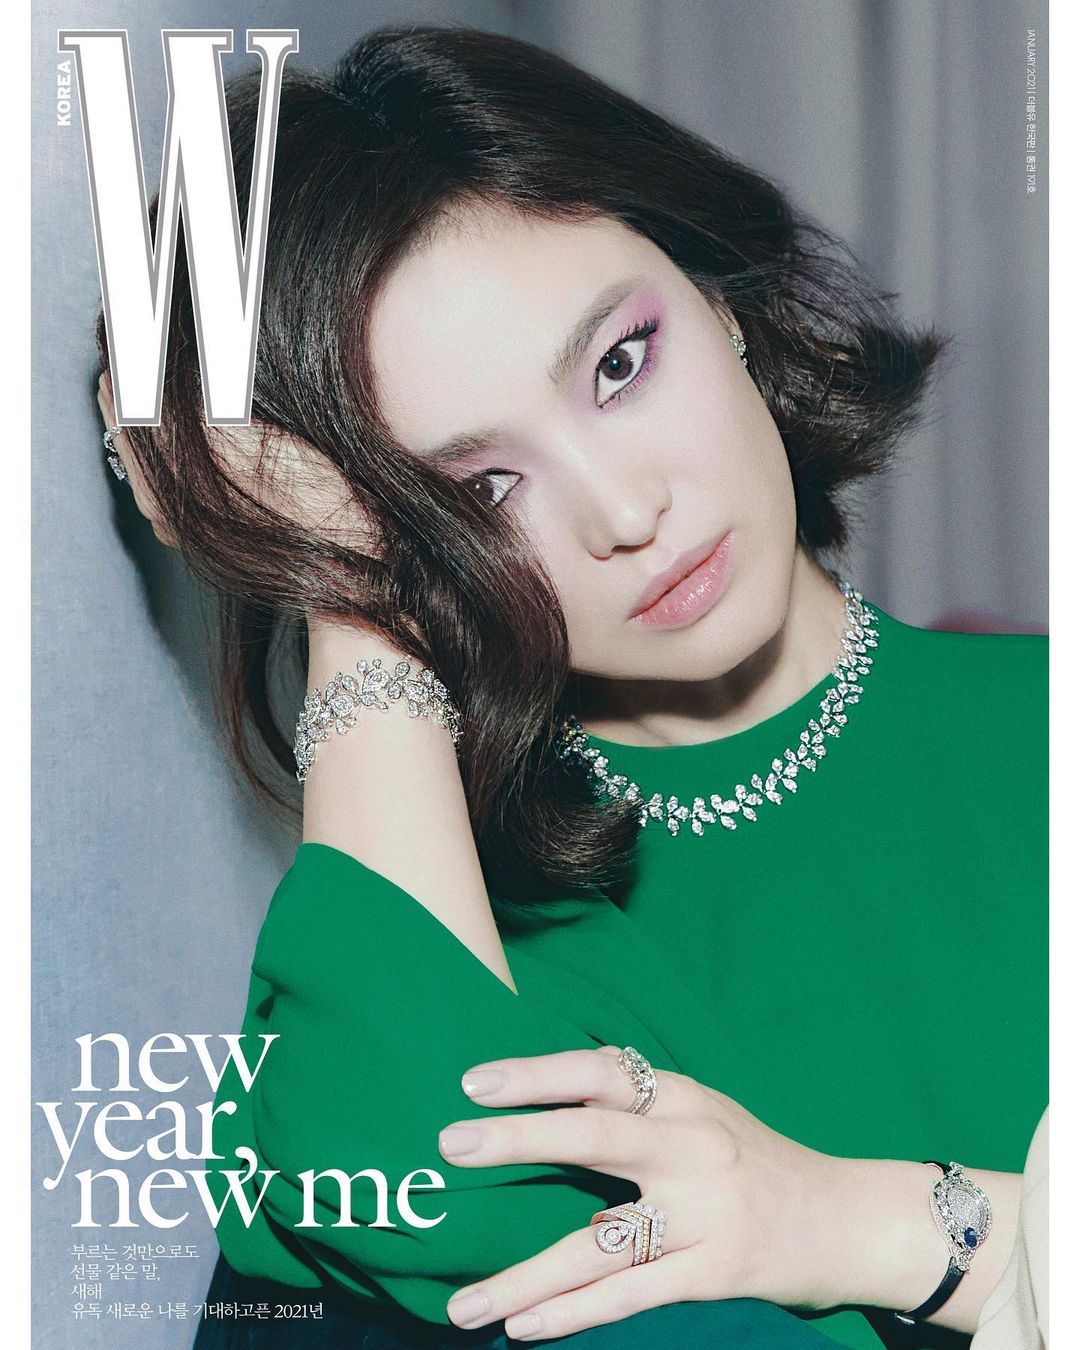 Song Hye Kyo xuất hiện đầy sắc sảo và mê hoặc trên bìa tạp chí thời trang W với concept 'new year, new me' - năm mới, khởi đầu mới. Đây cũng như lời tuyên ngôn của kiều nữ họ Song sau một năm 2020 đầy sóng gió